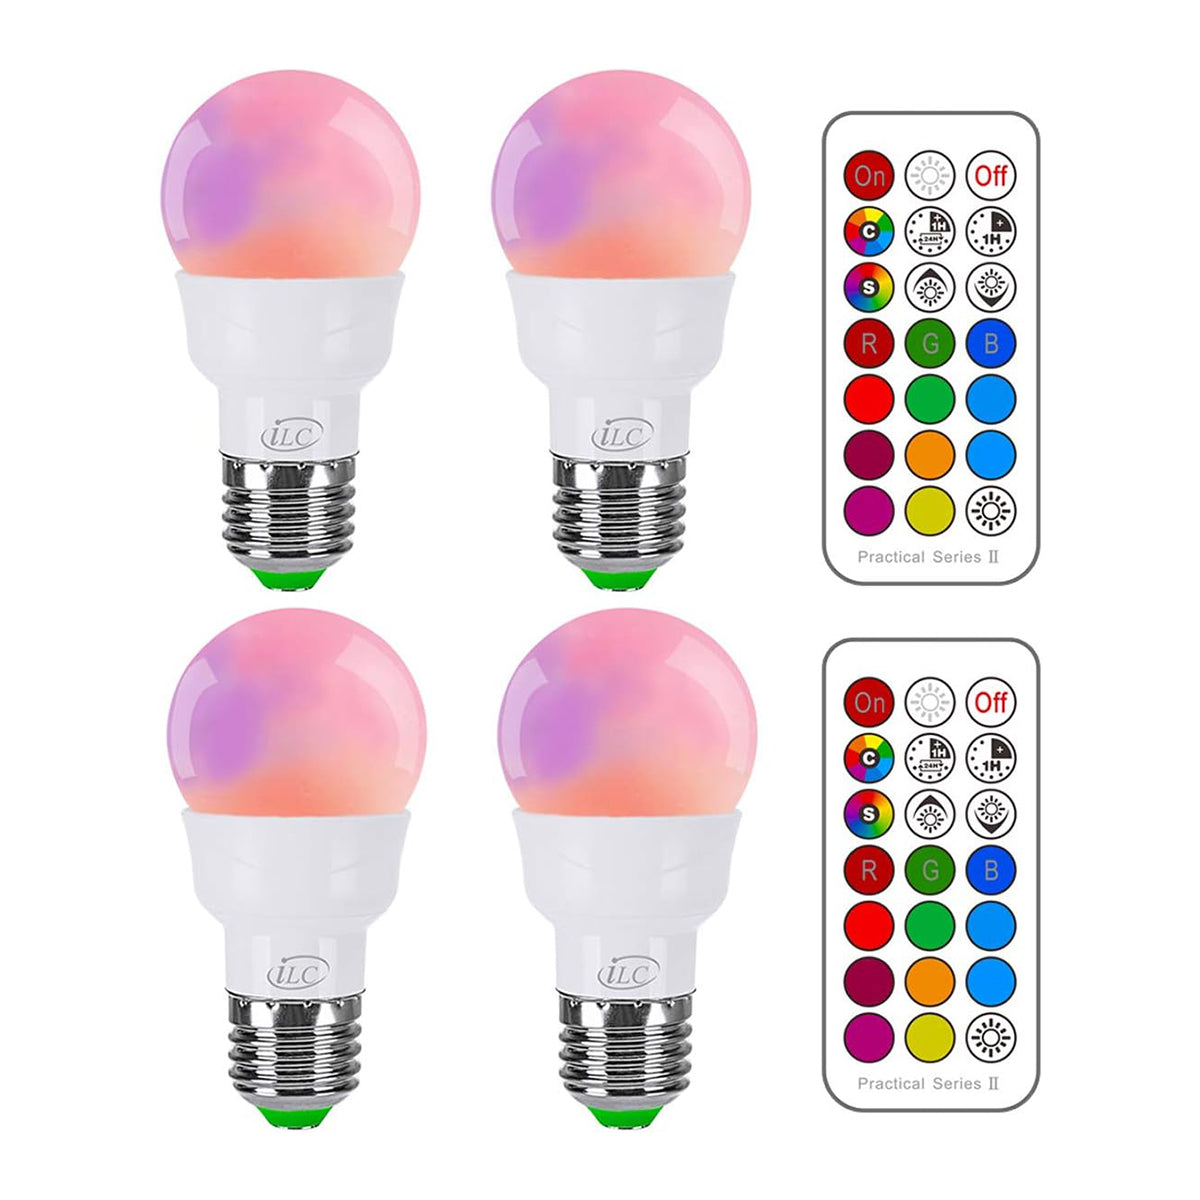 iLC Ampoule LED RVB, changement de couleur équivalent 40 W, 450 lm à intensité variable 5 W E26 culot à vis RGBW, ampoule de lumière d'ambiance – 12 choix de couleurs – Télécommande infrarouge incluse (lot de 4) 